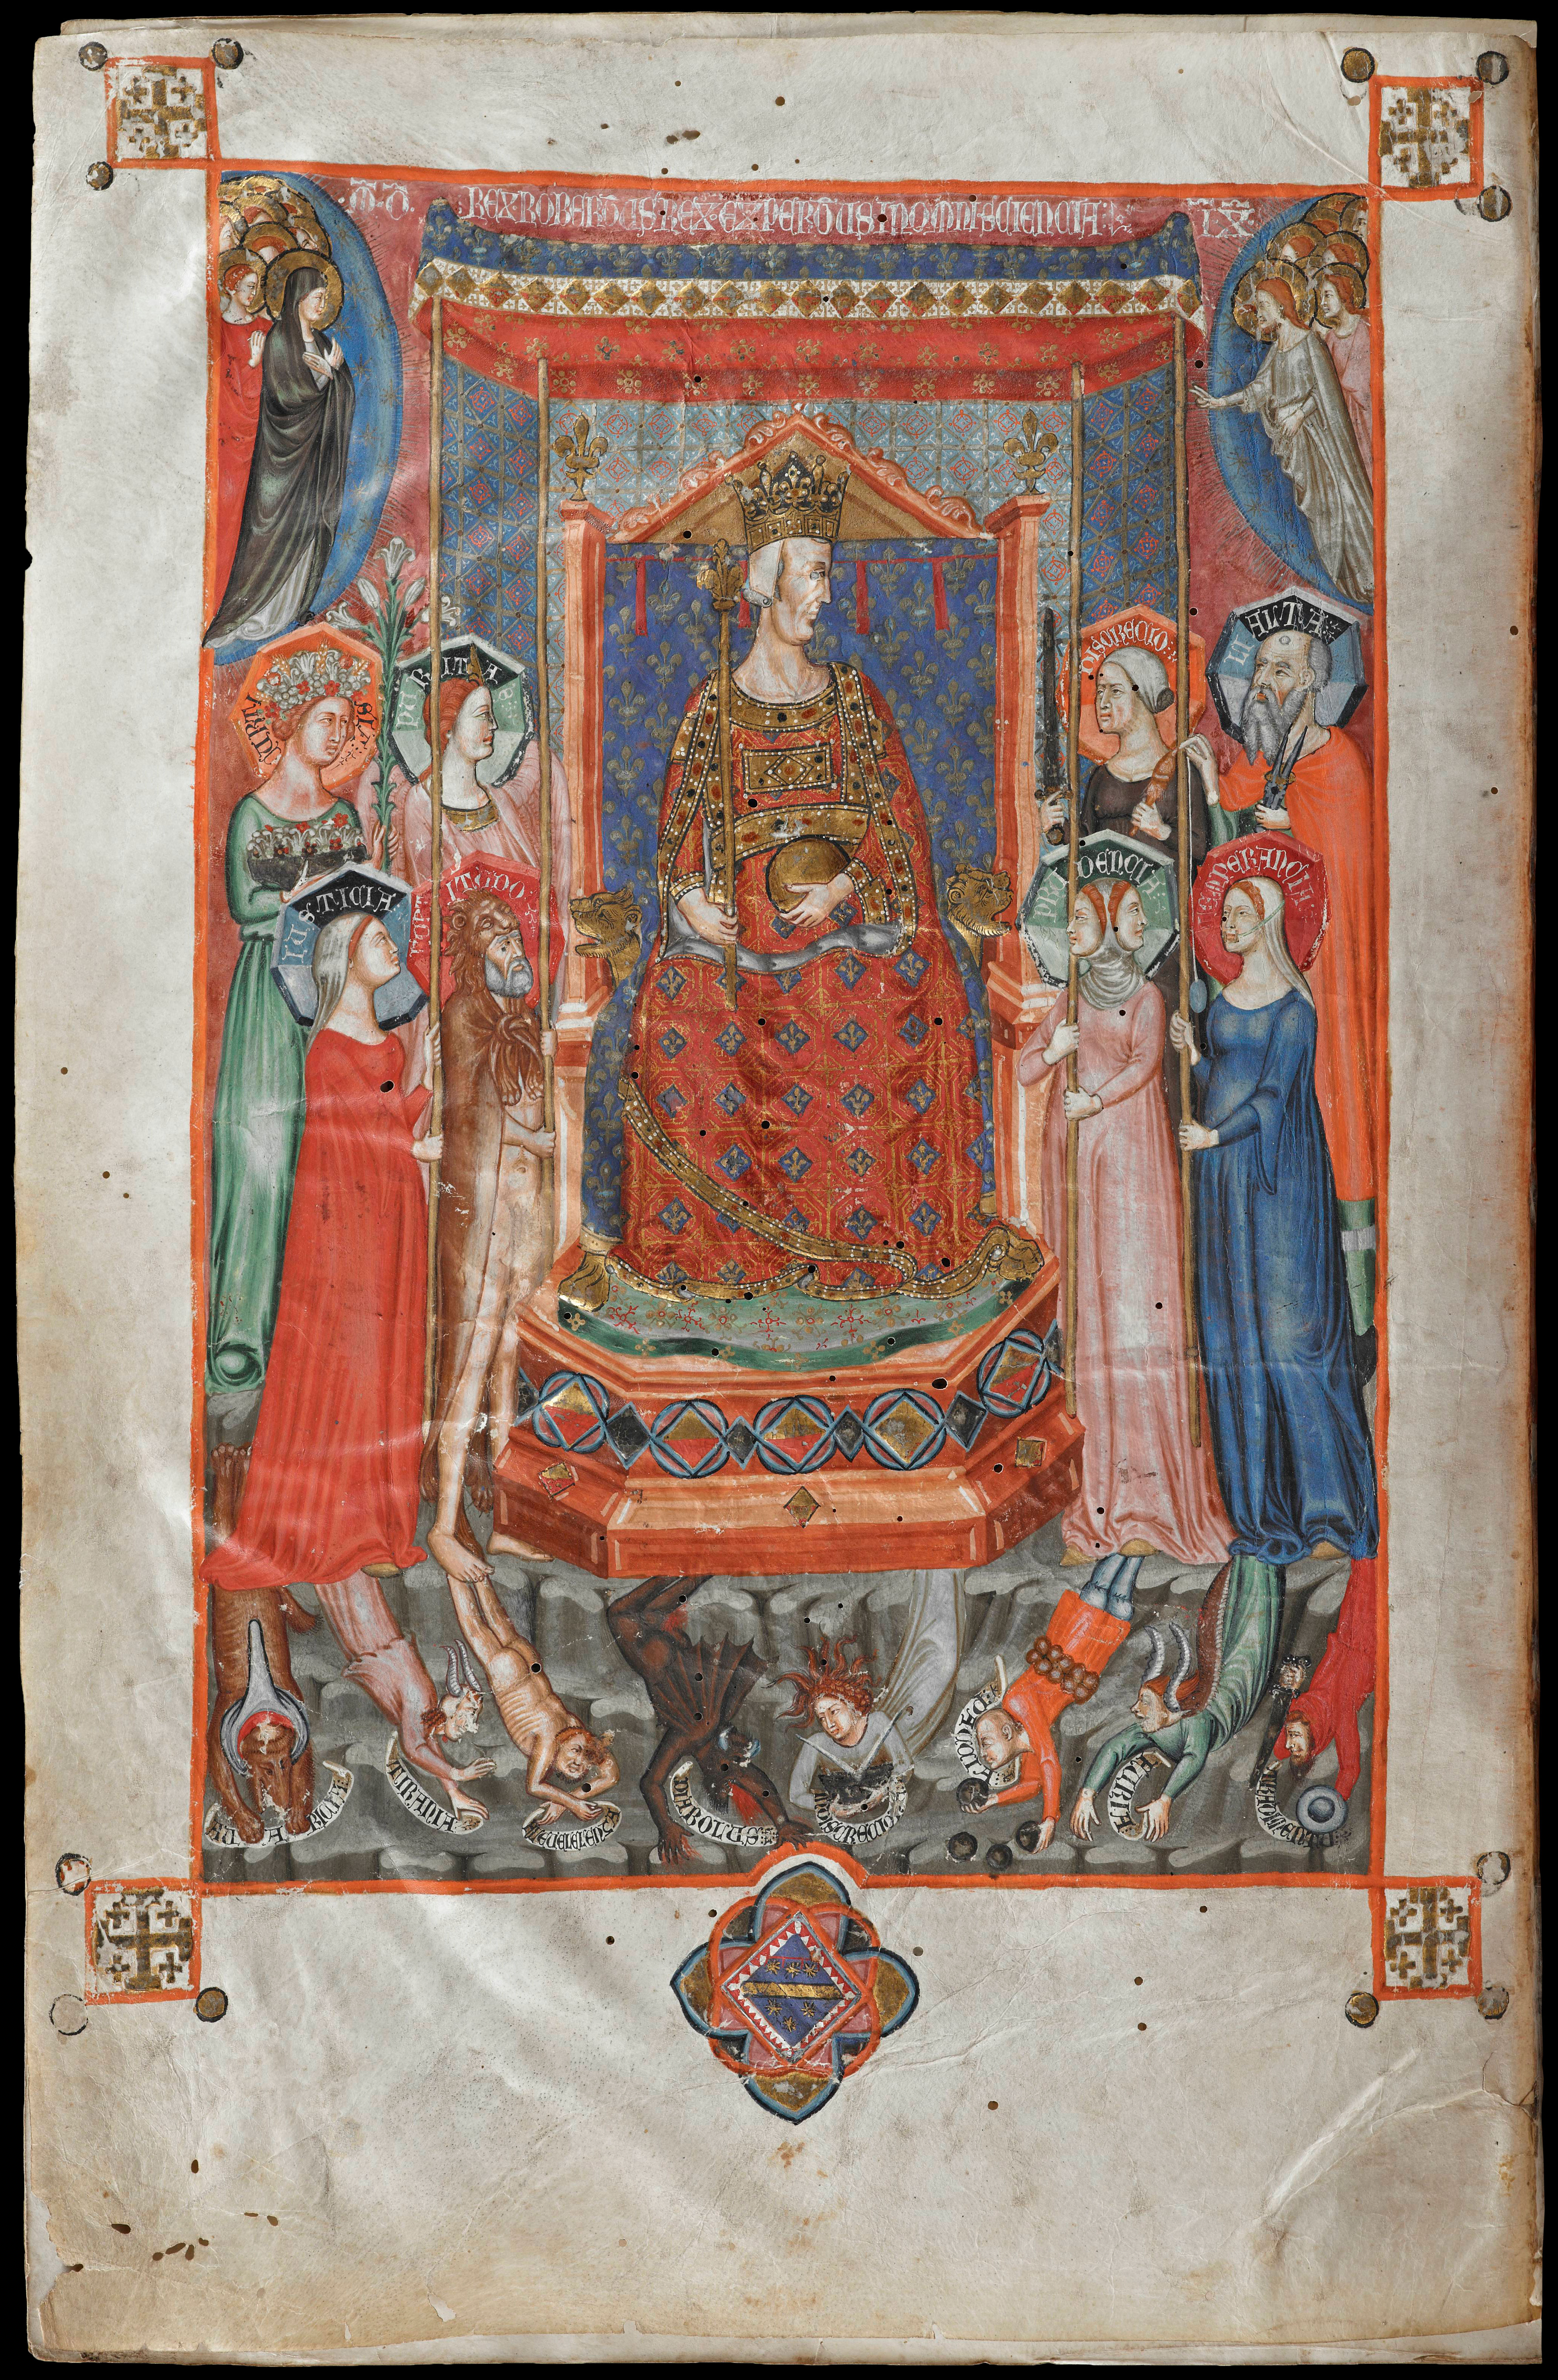 Acht Tugenden umgeben den Thron des Robert von Anjou